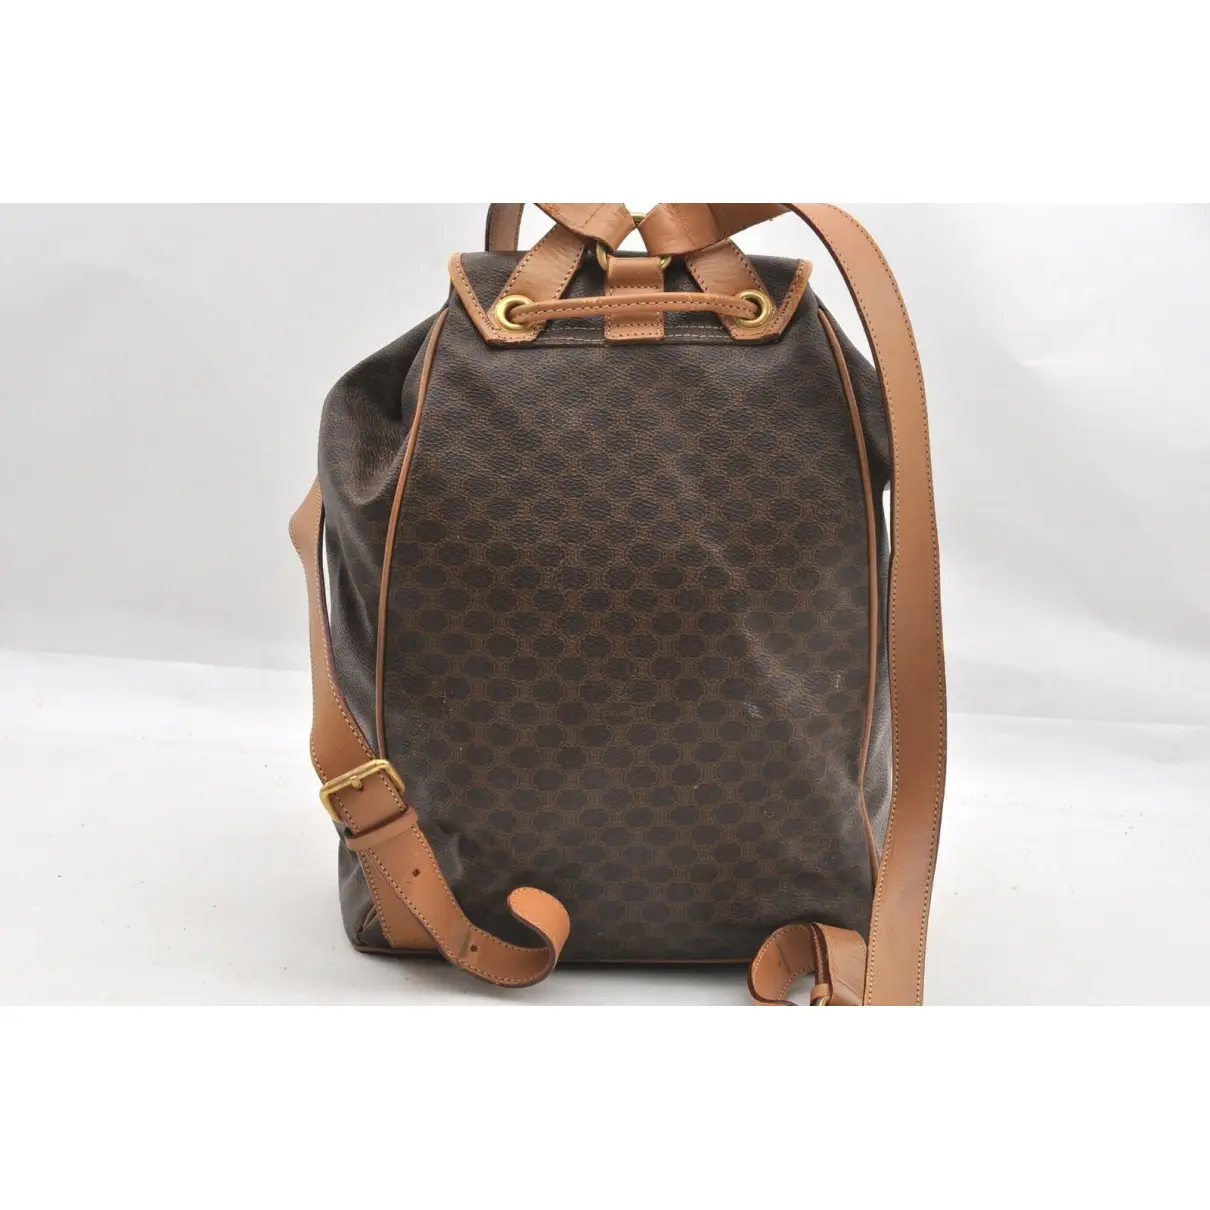 Buy Celine Leather backpack online